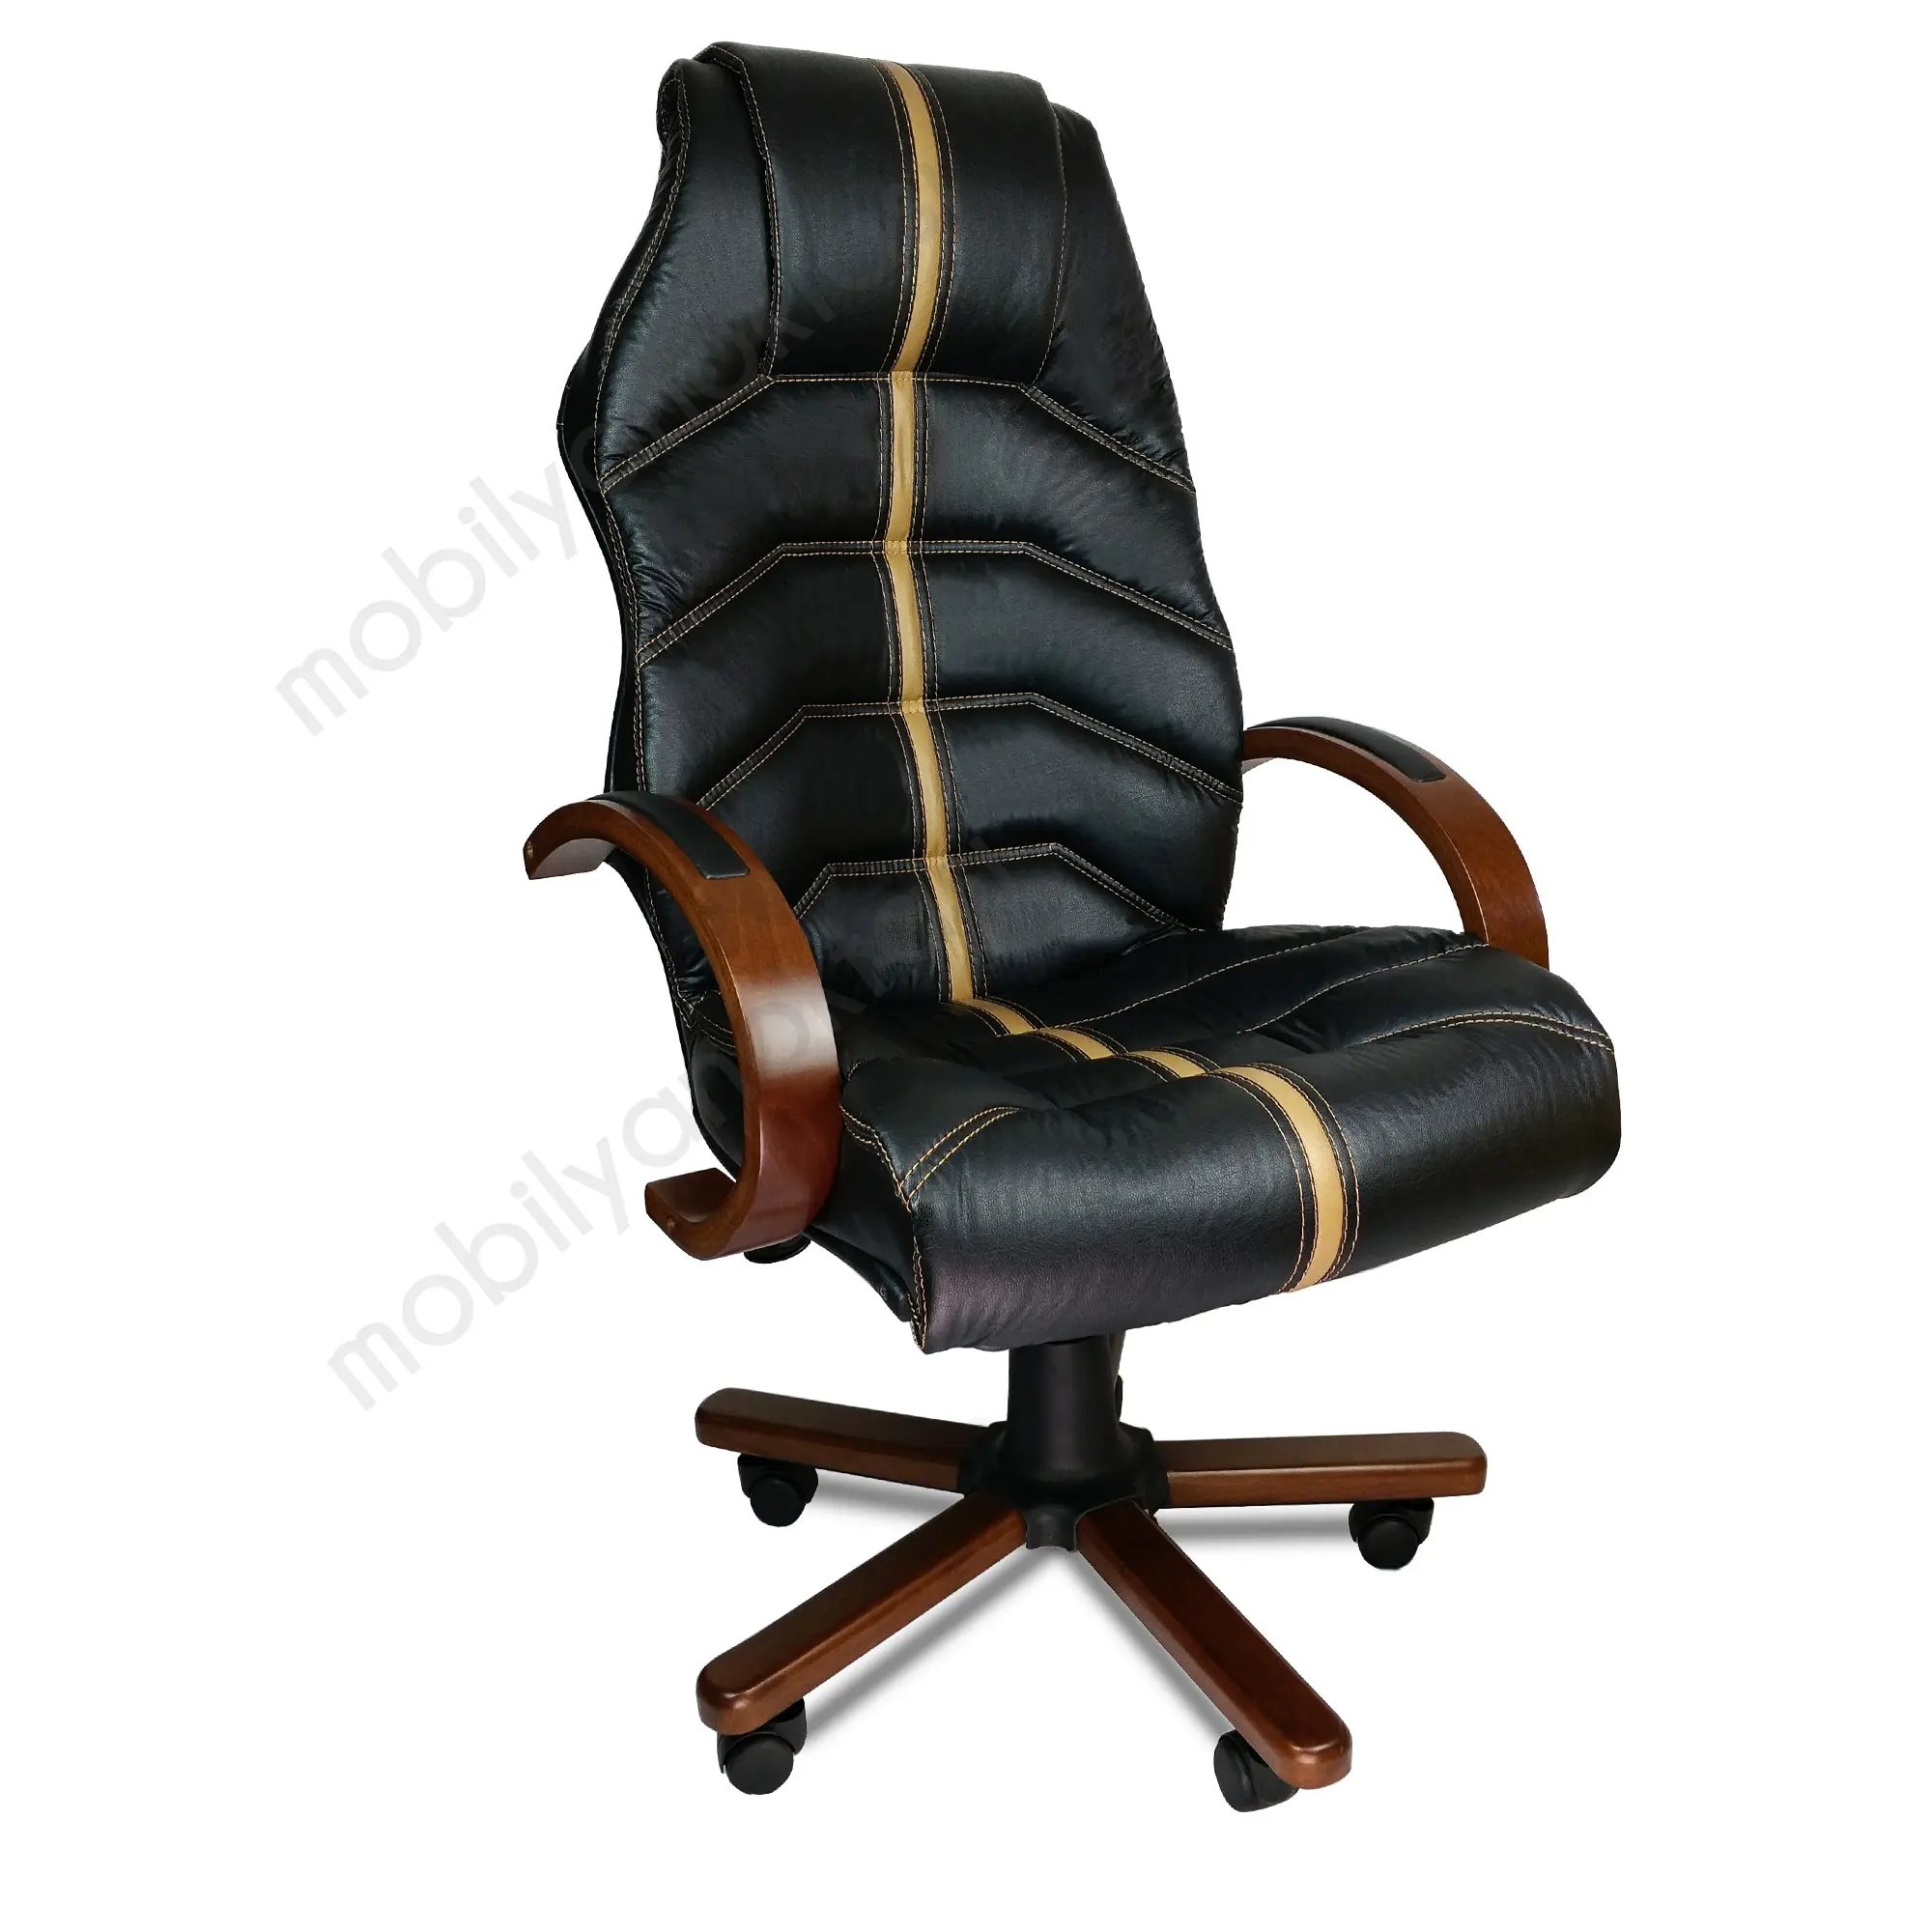 Фото - Компьютерное кресло, офисное кресло руководителя, эргономичное регулируемое кресло руководителя, вращающееся кожаное интернет-кресло, отк... эргономичное кресло poltrona cadeira офисное кресло офисное кресло компьютерное кресло